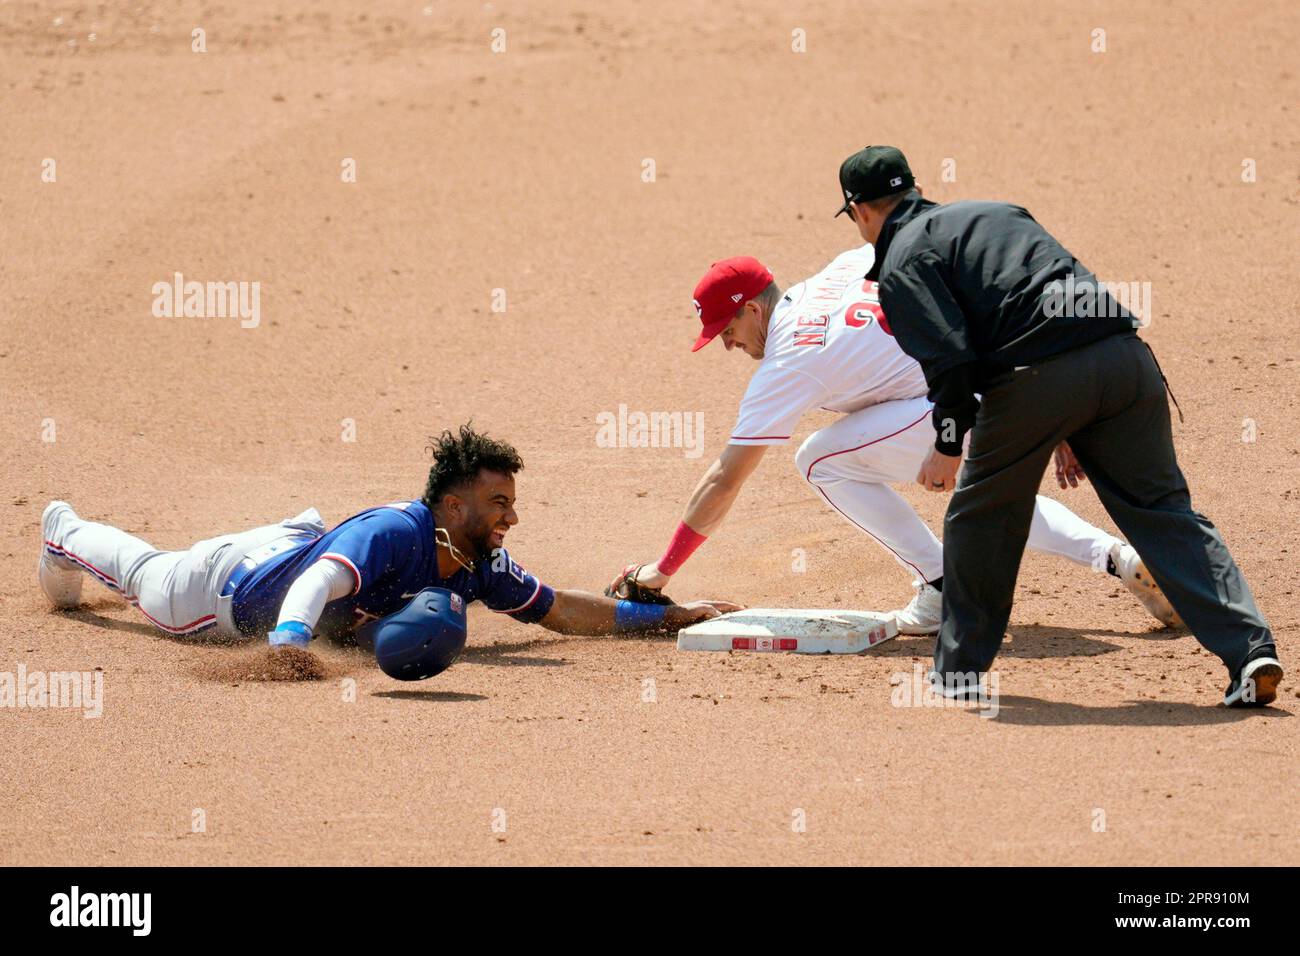 Texas Rangers' Ezequiel Duran, left, is caught stealing second